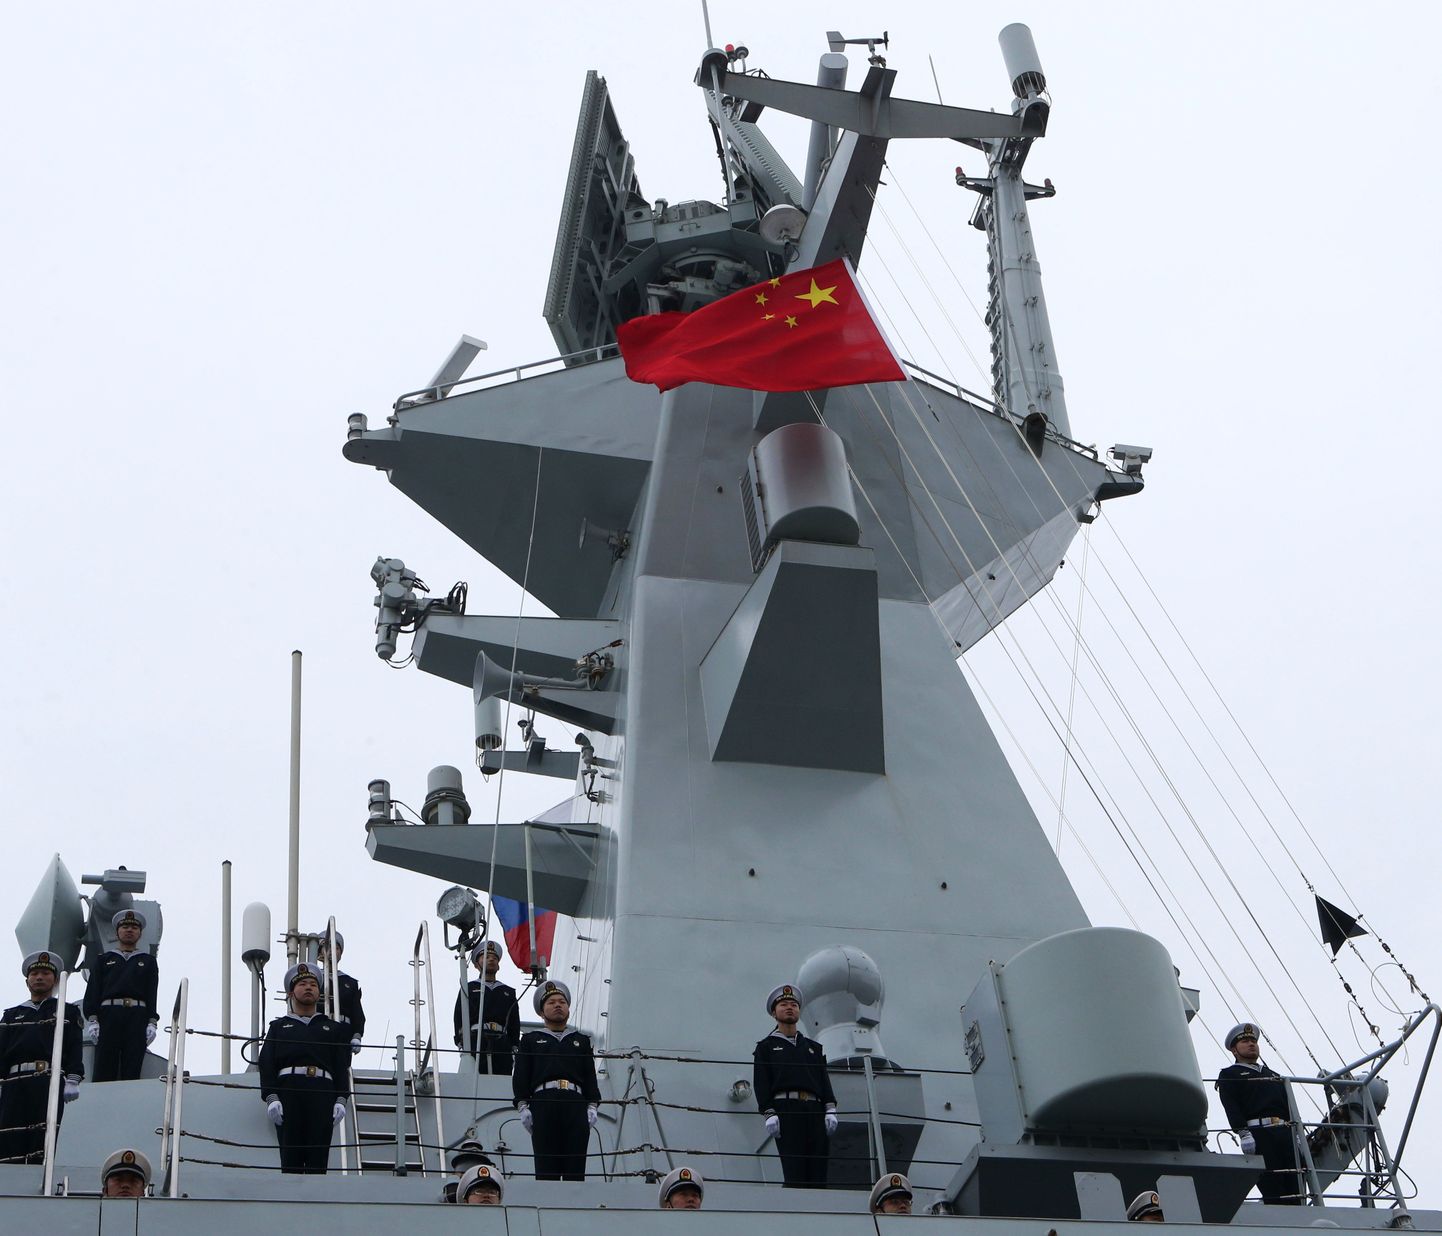 Hiina fregatt Yuncheng juulikuus Läänemerel.